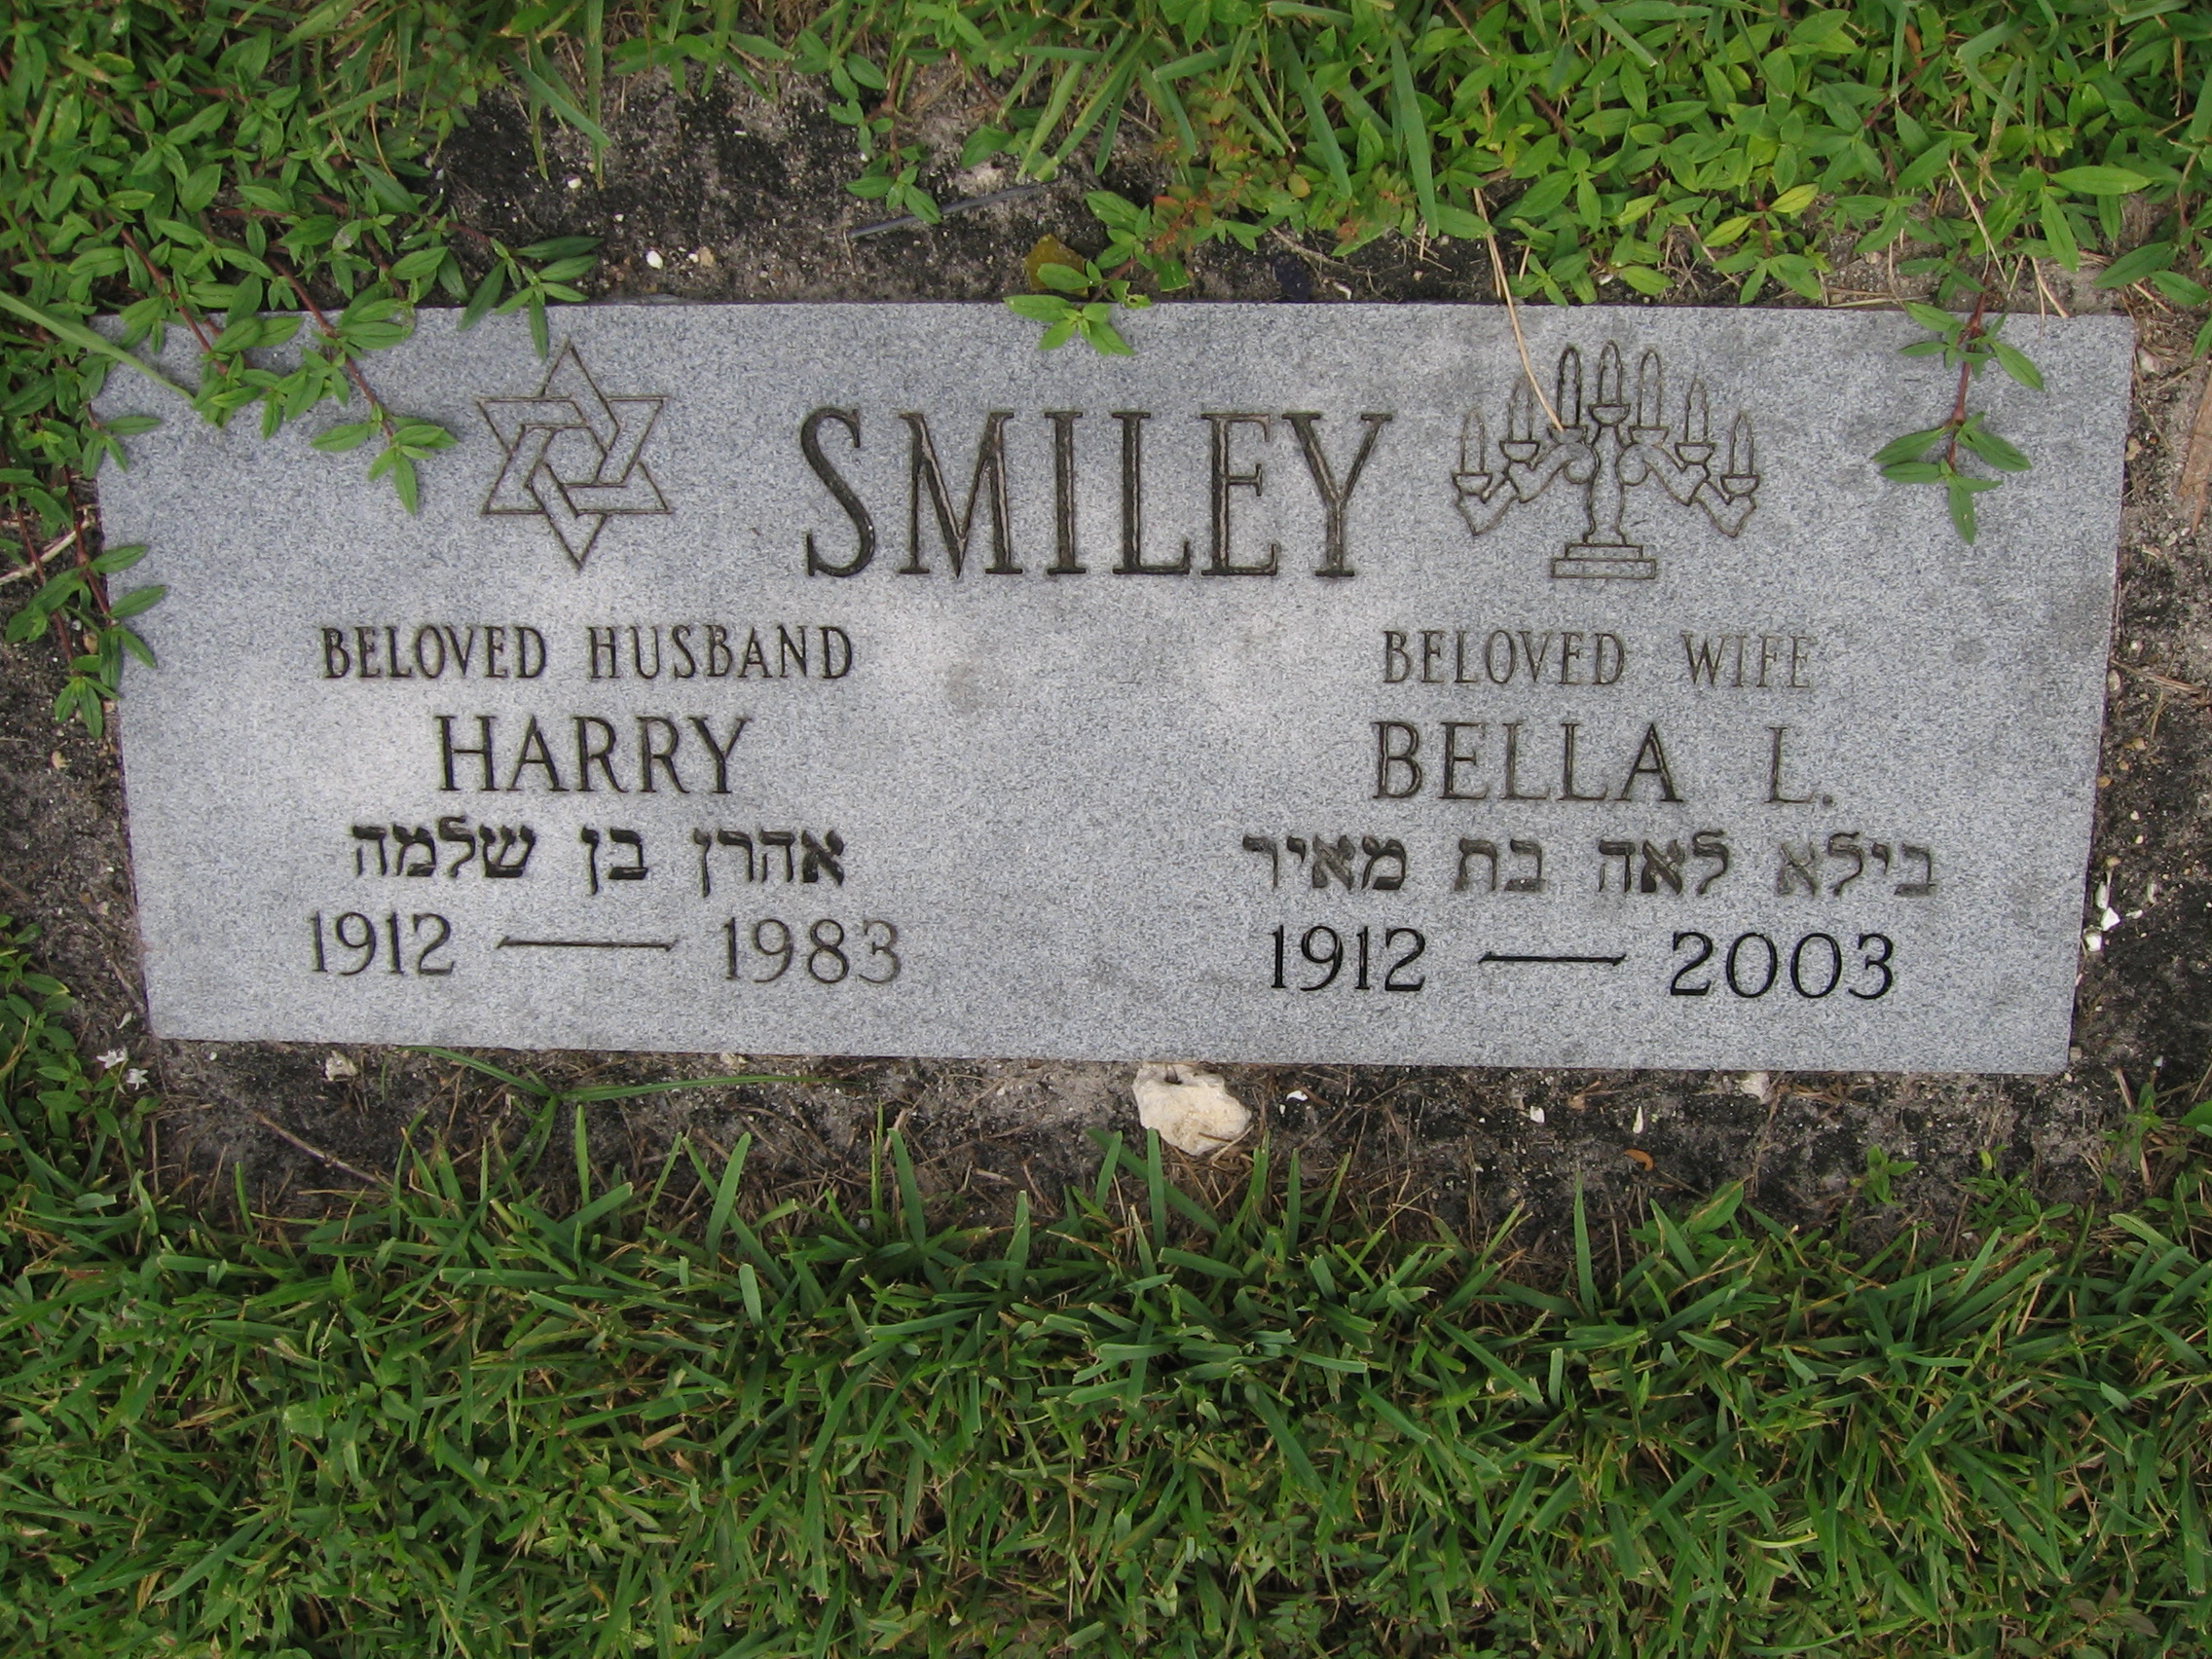 Harry Smiley